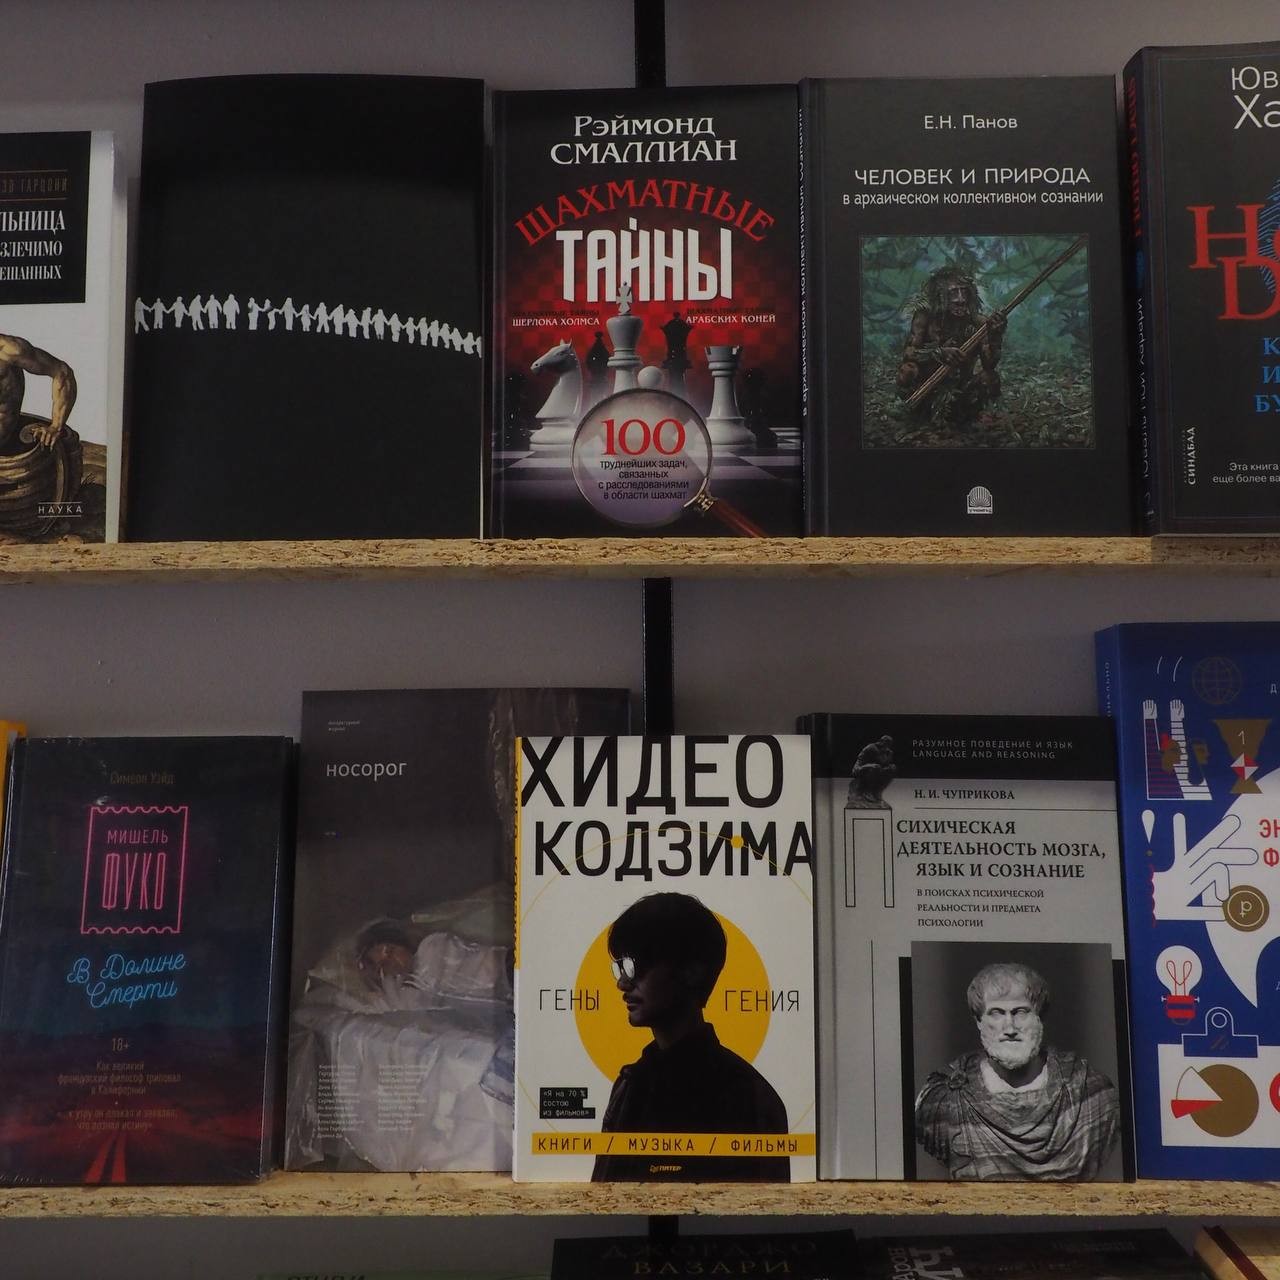 Нестандартные книги, которые можно включить в школьную программу: советы ставропольской Лермонтовки